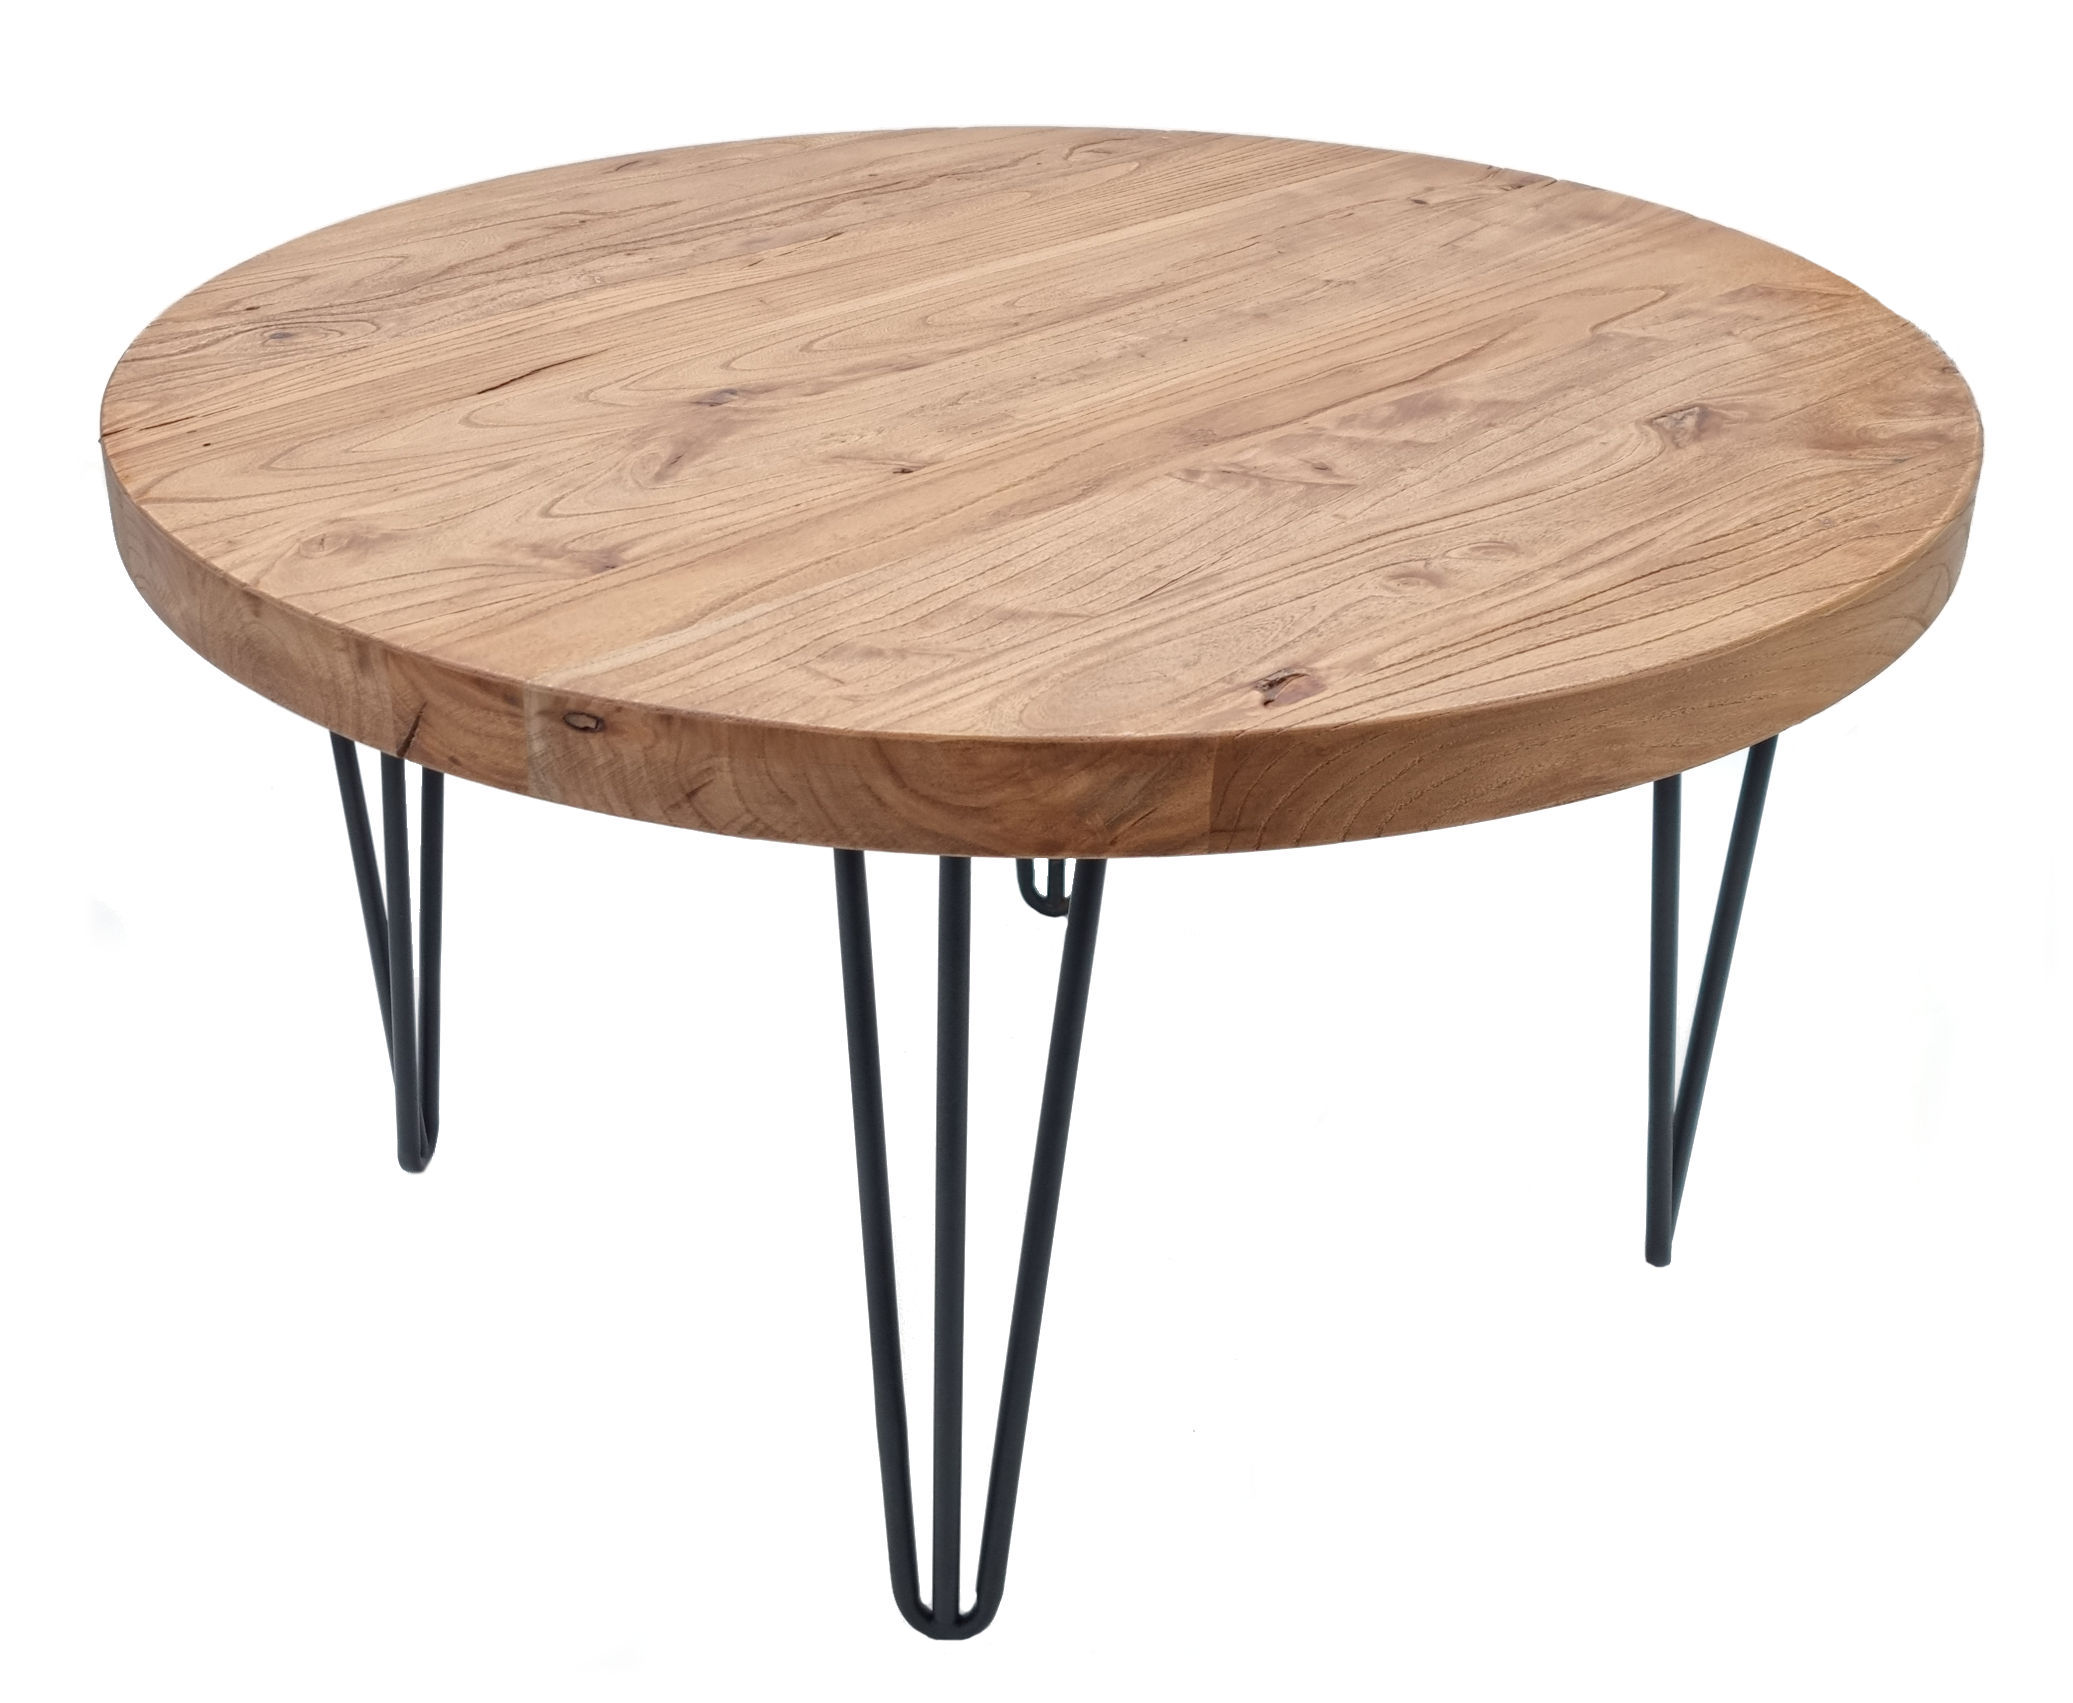  Beistelltisch aus Ulmenholz - 3 Modelle - Massivholz Tisch mit Beinen aus Metall 